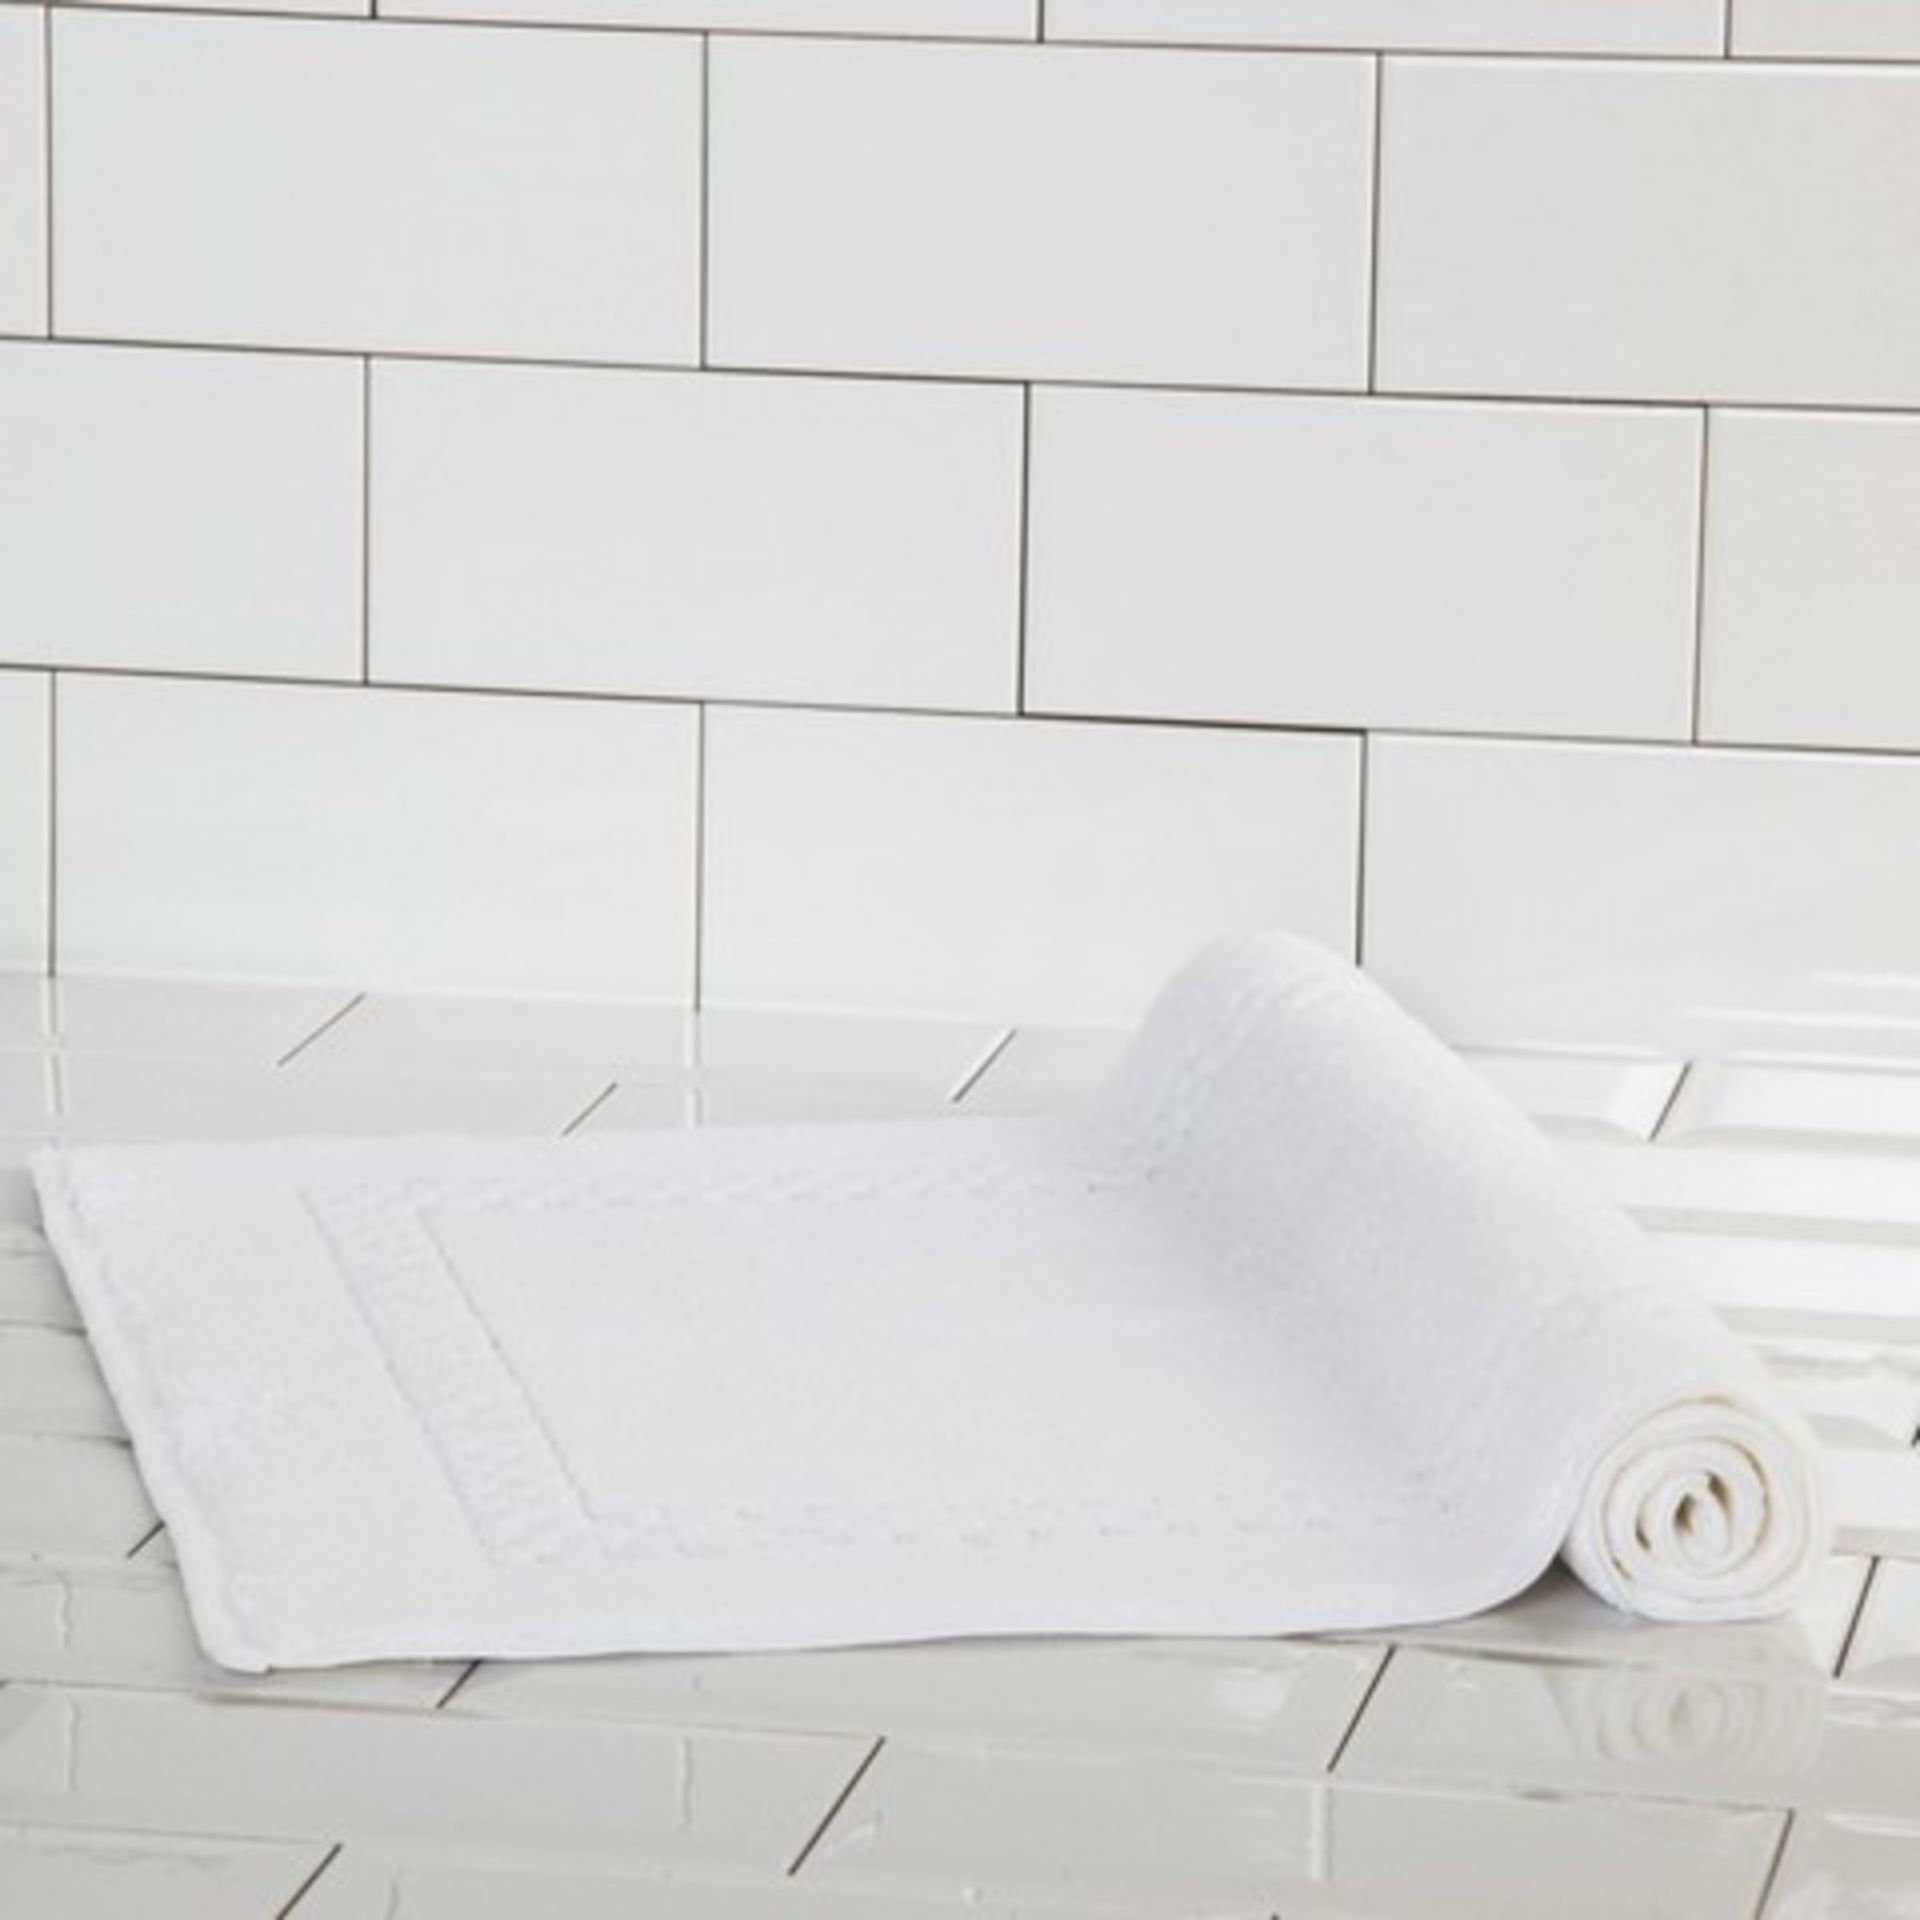 + VAT Brand New Frette Luxury Italian Made White Bath Mat 100% Open Ended High Quality Cotton -